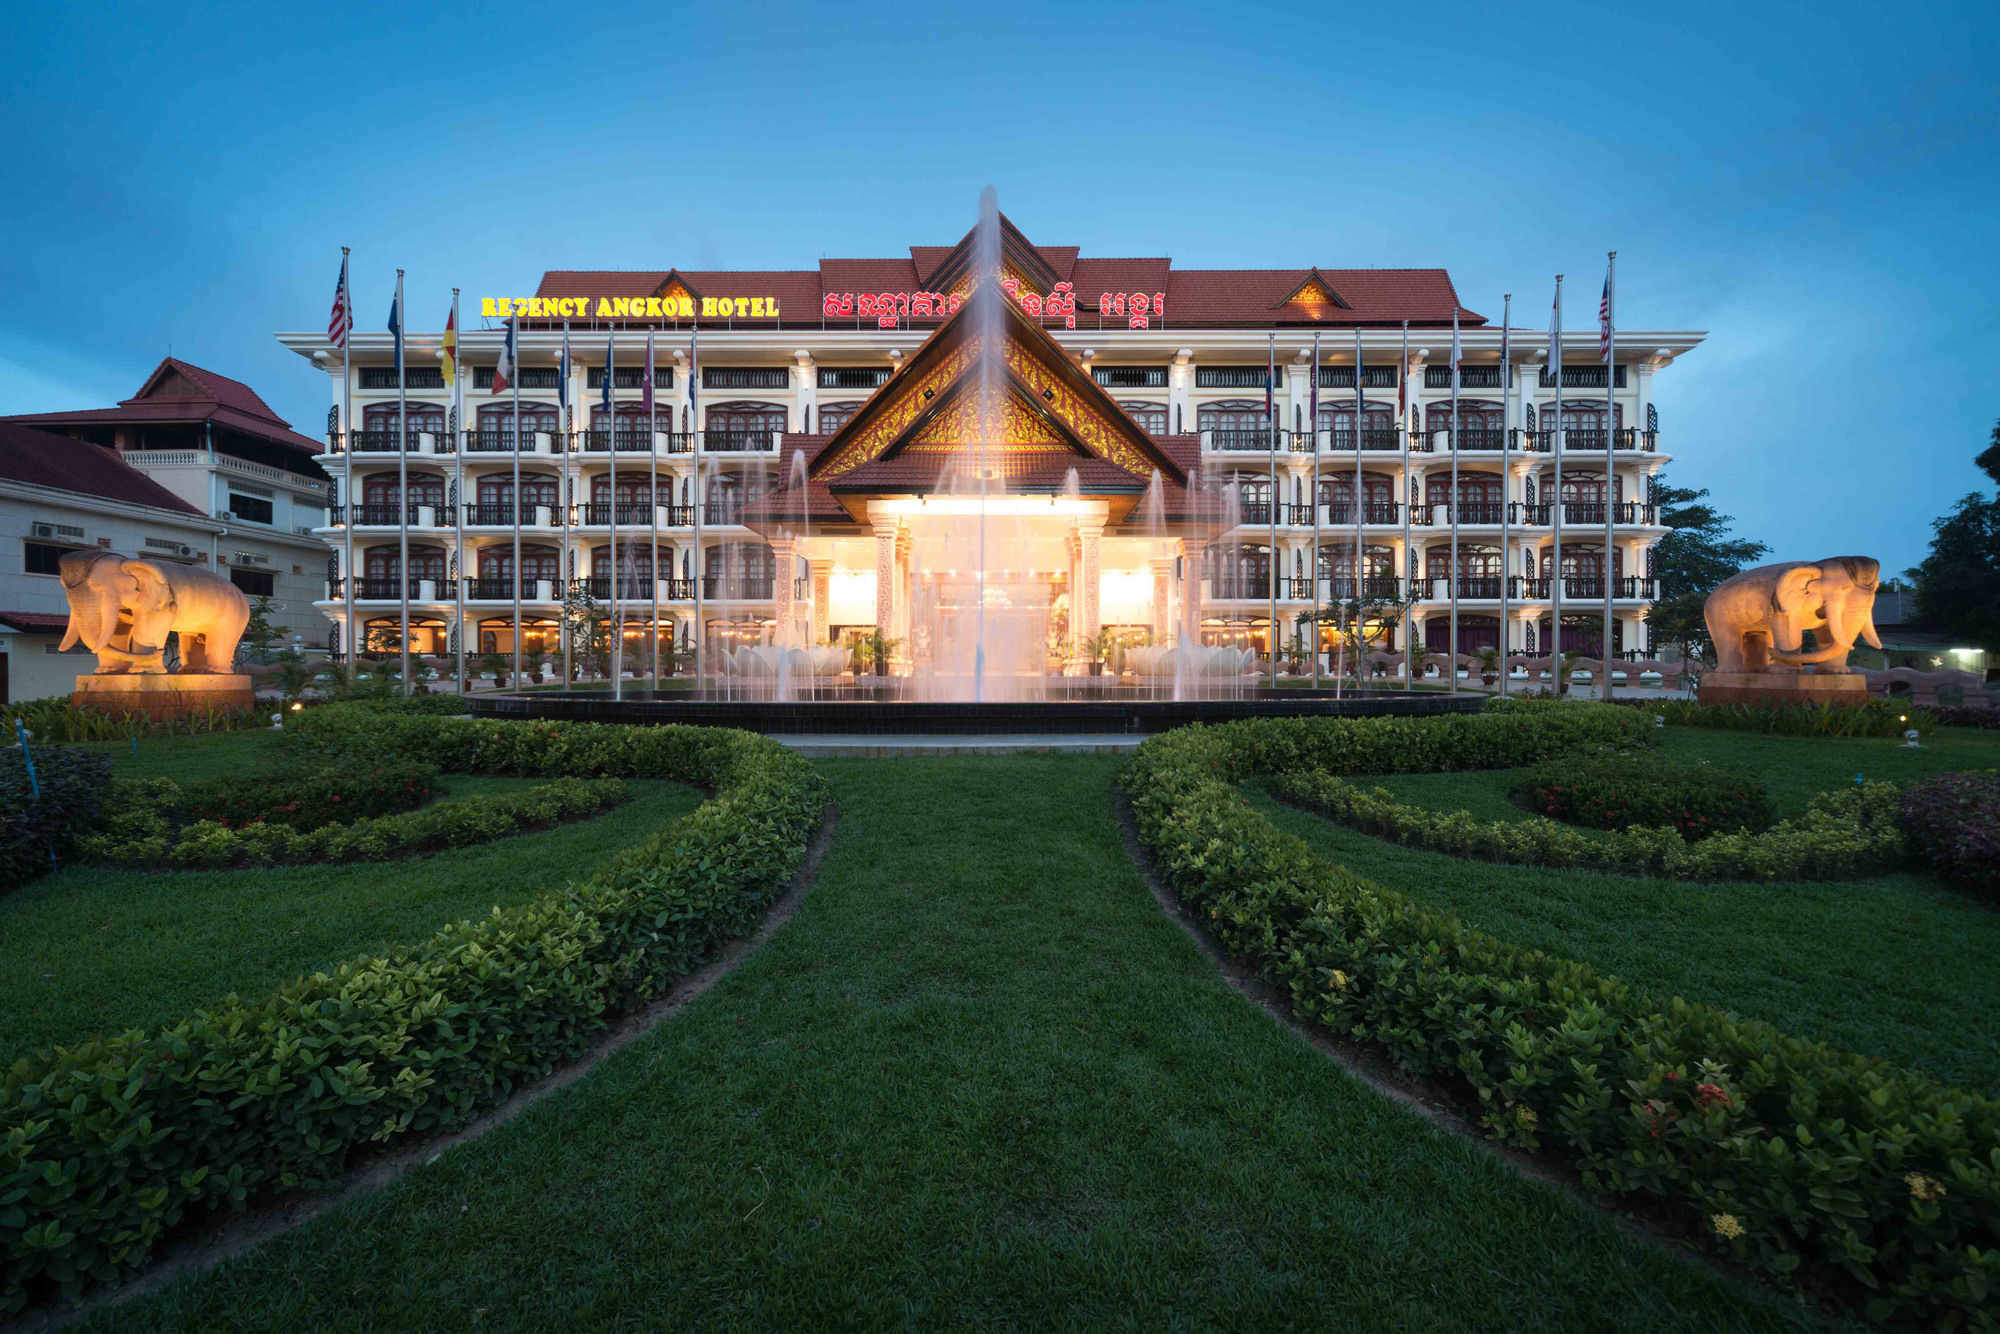 REGENCY ANGKOR HOTEL - Cambodia - Siem Reap